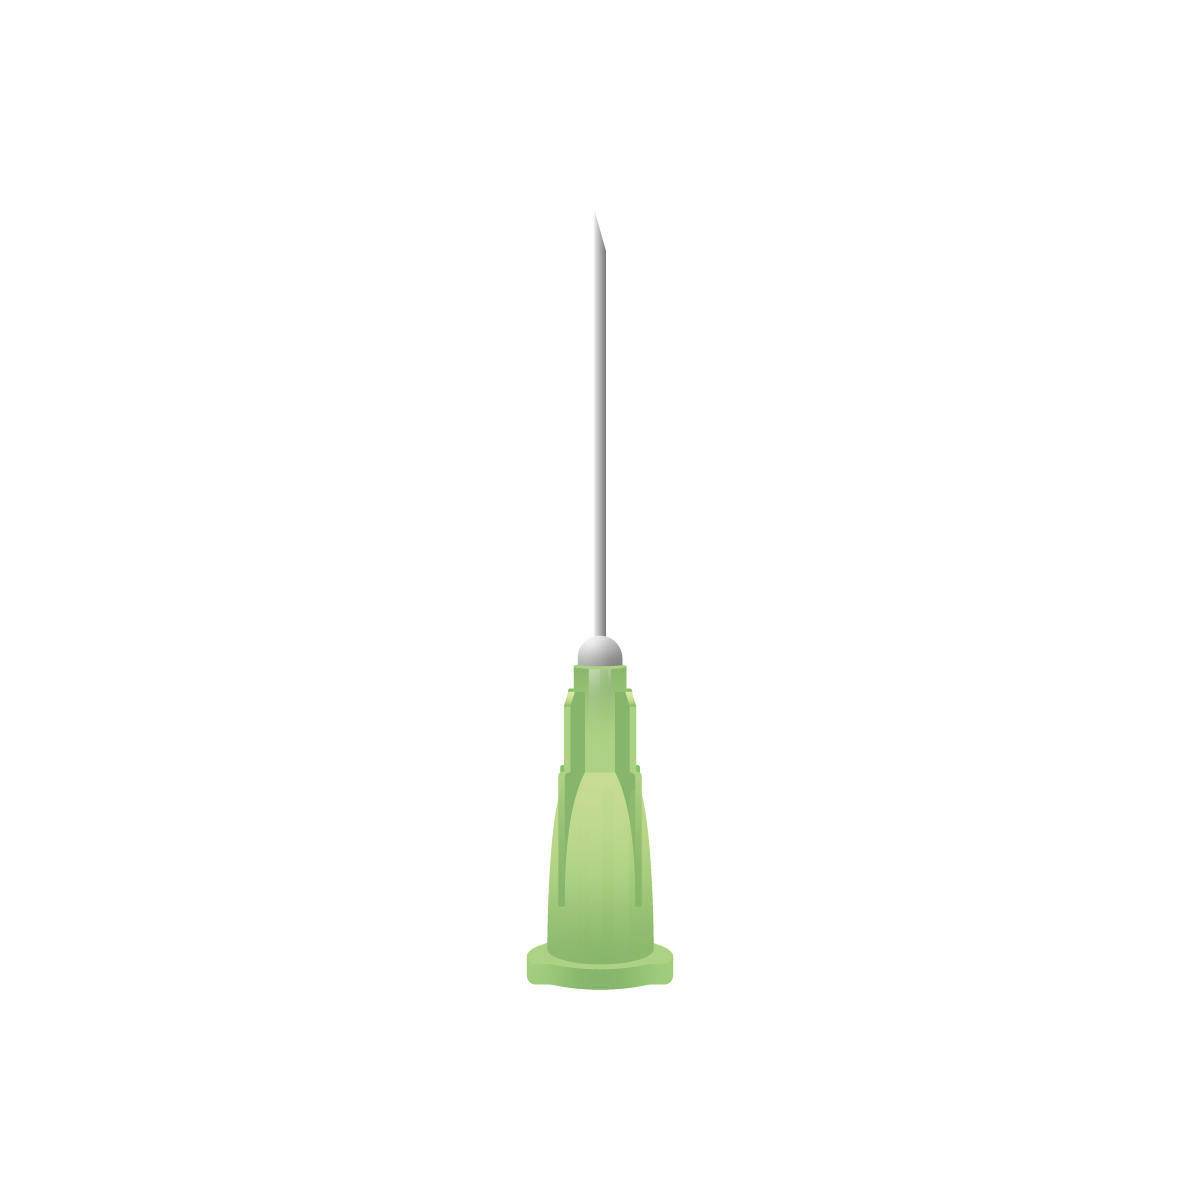 21g Green 1 inch Terumo Needles